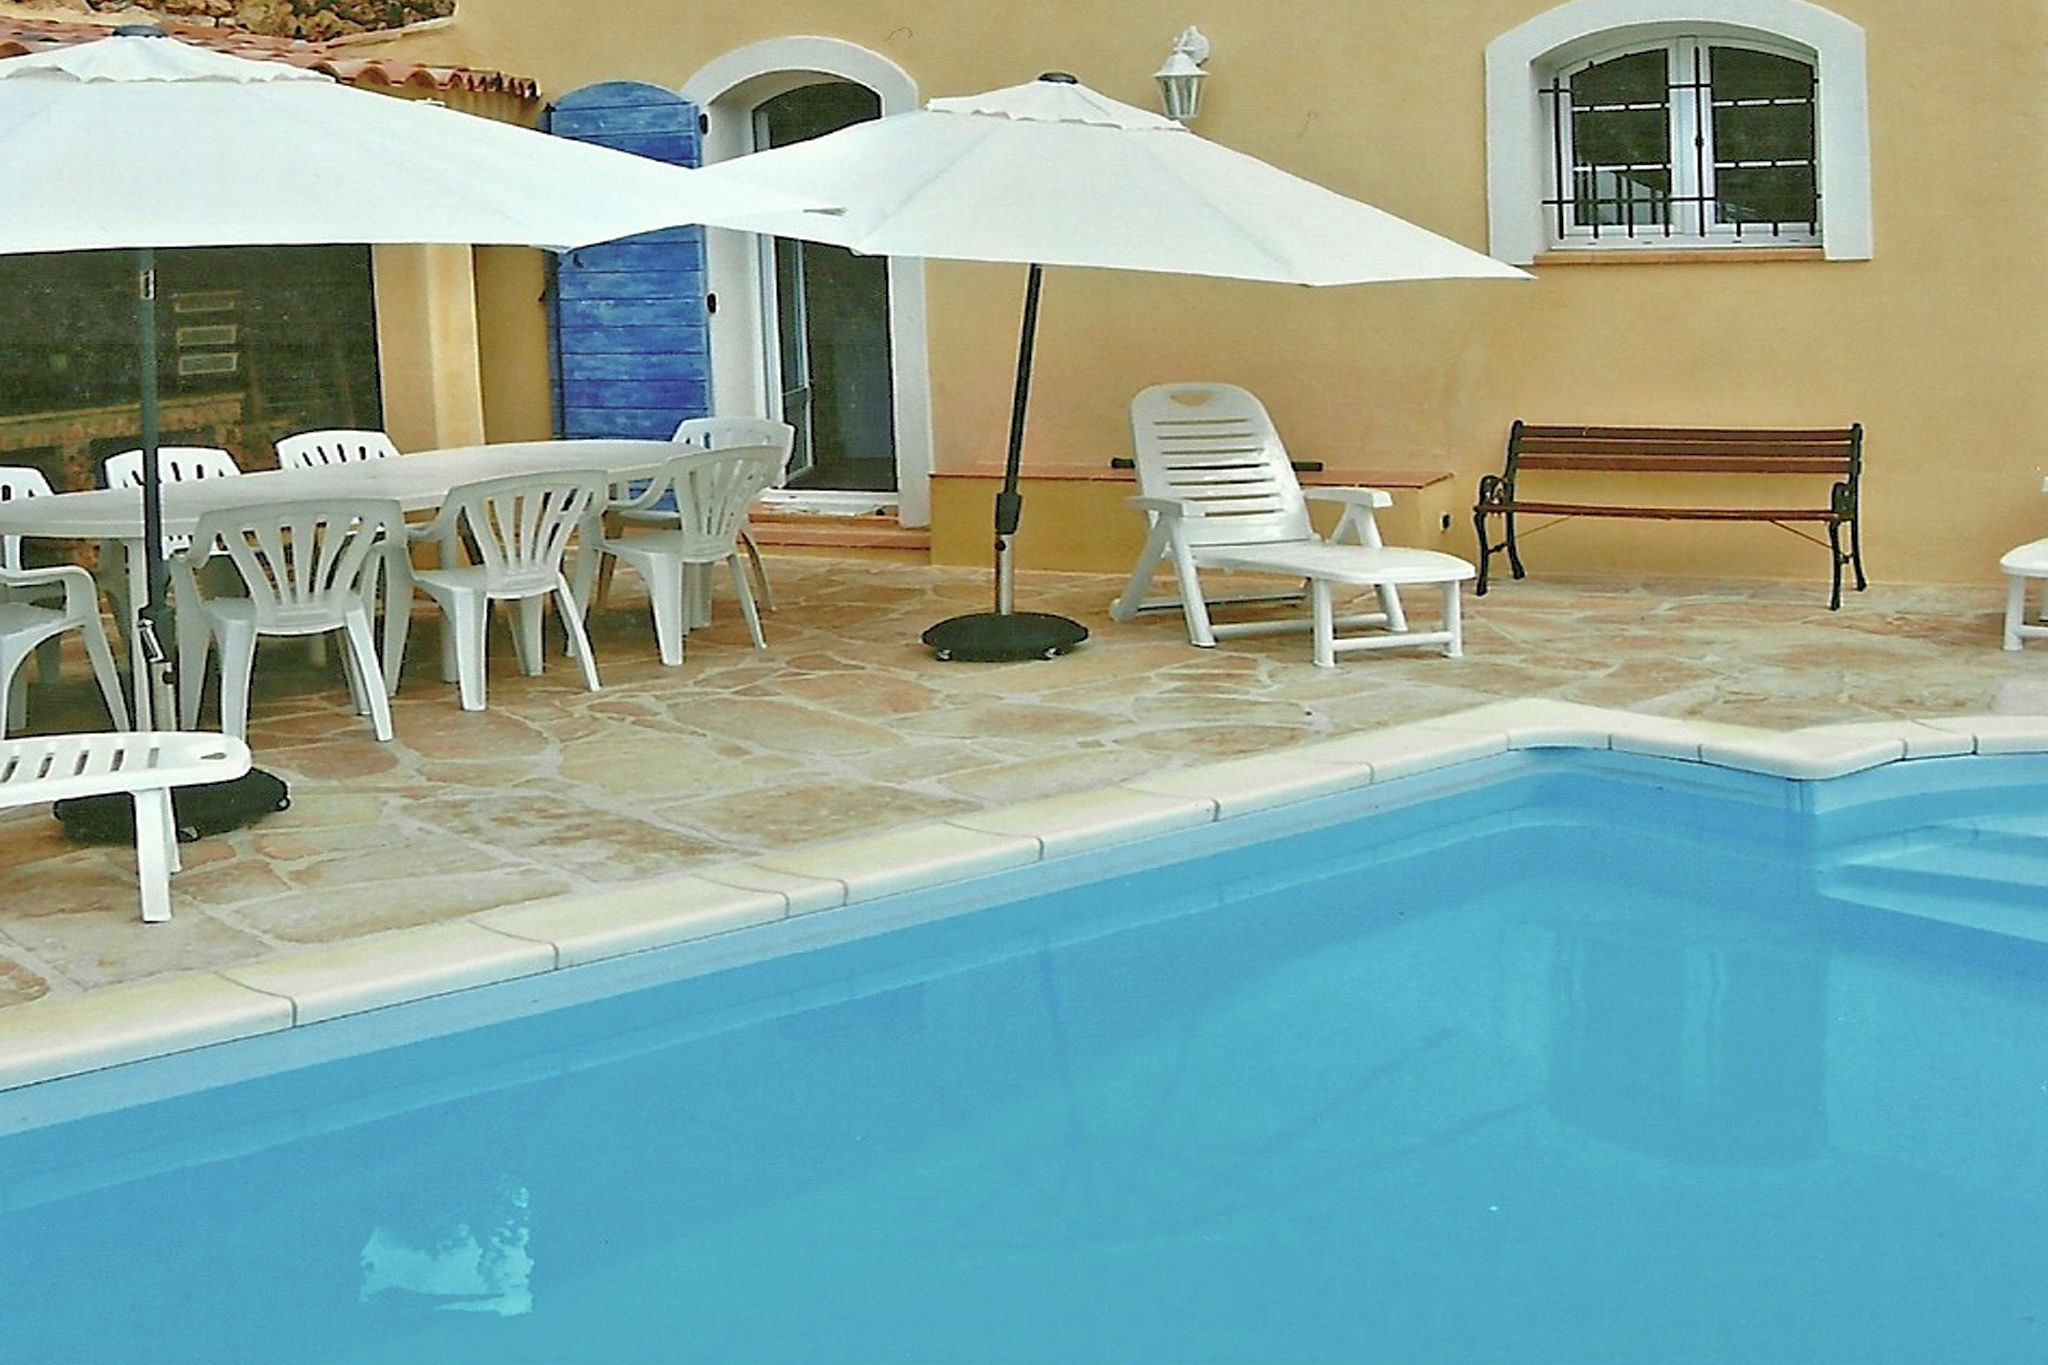 Luxuriöse Villa mit eigenem Pool in Cotignac, Frankreich